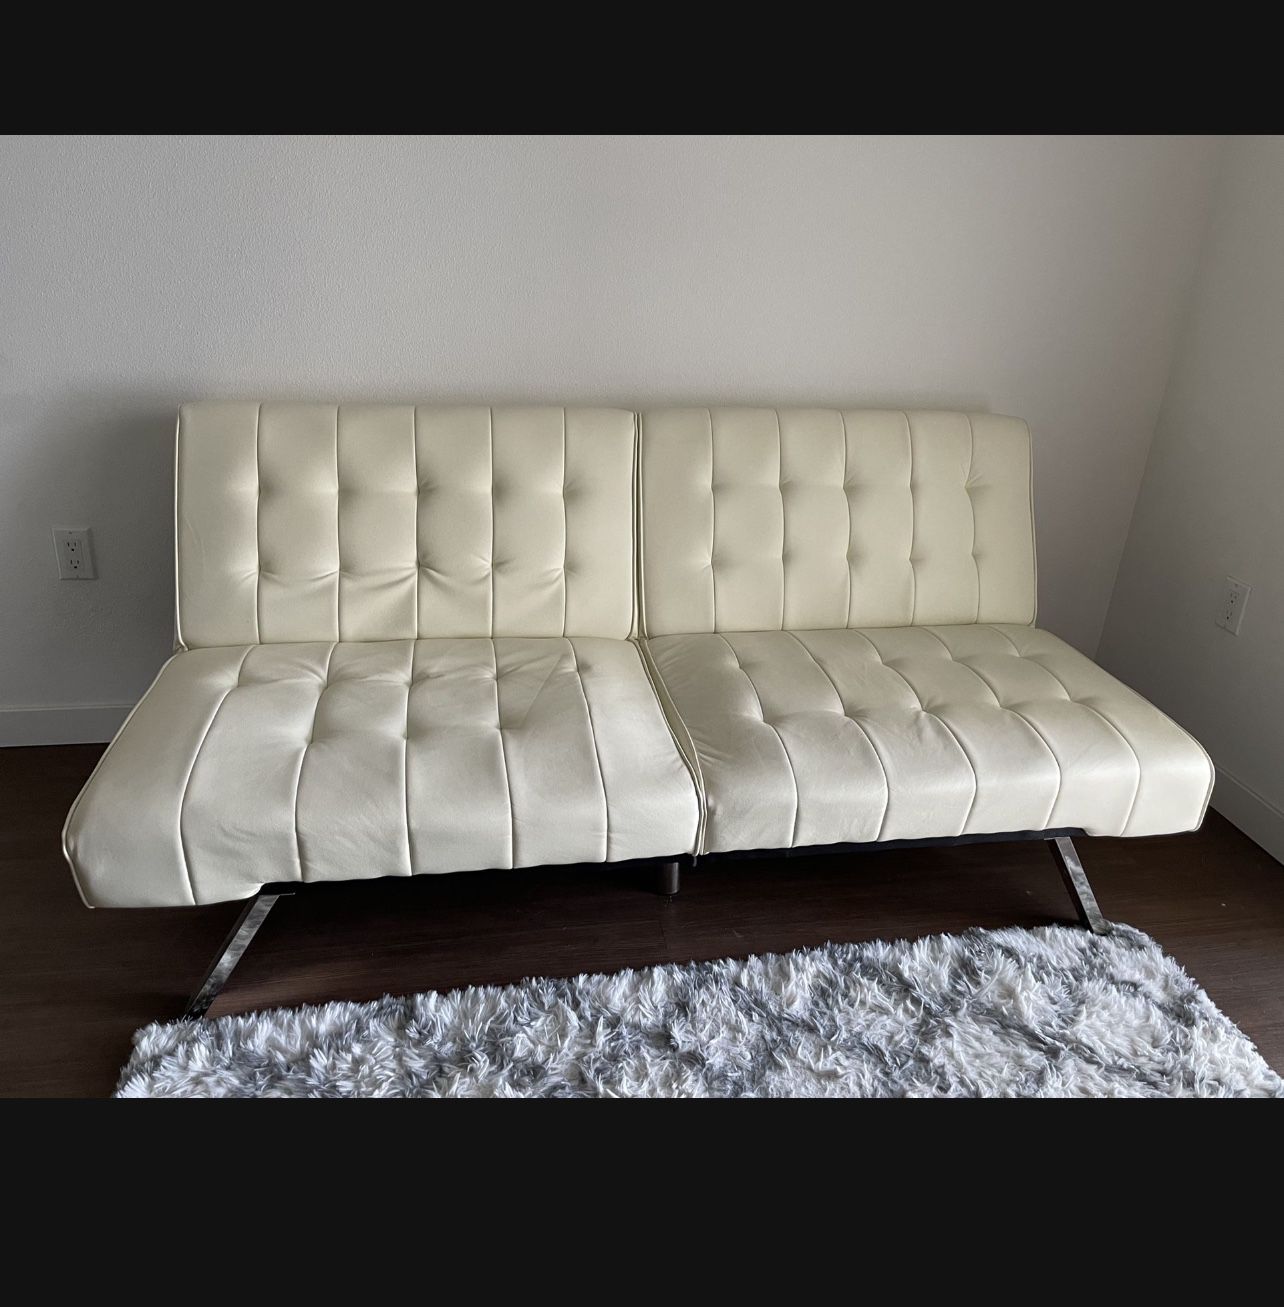 Leather Foldable Futon Sofa Bed